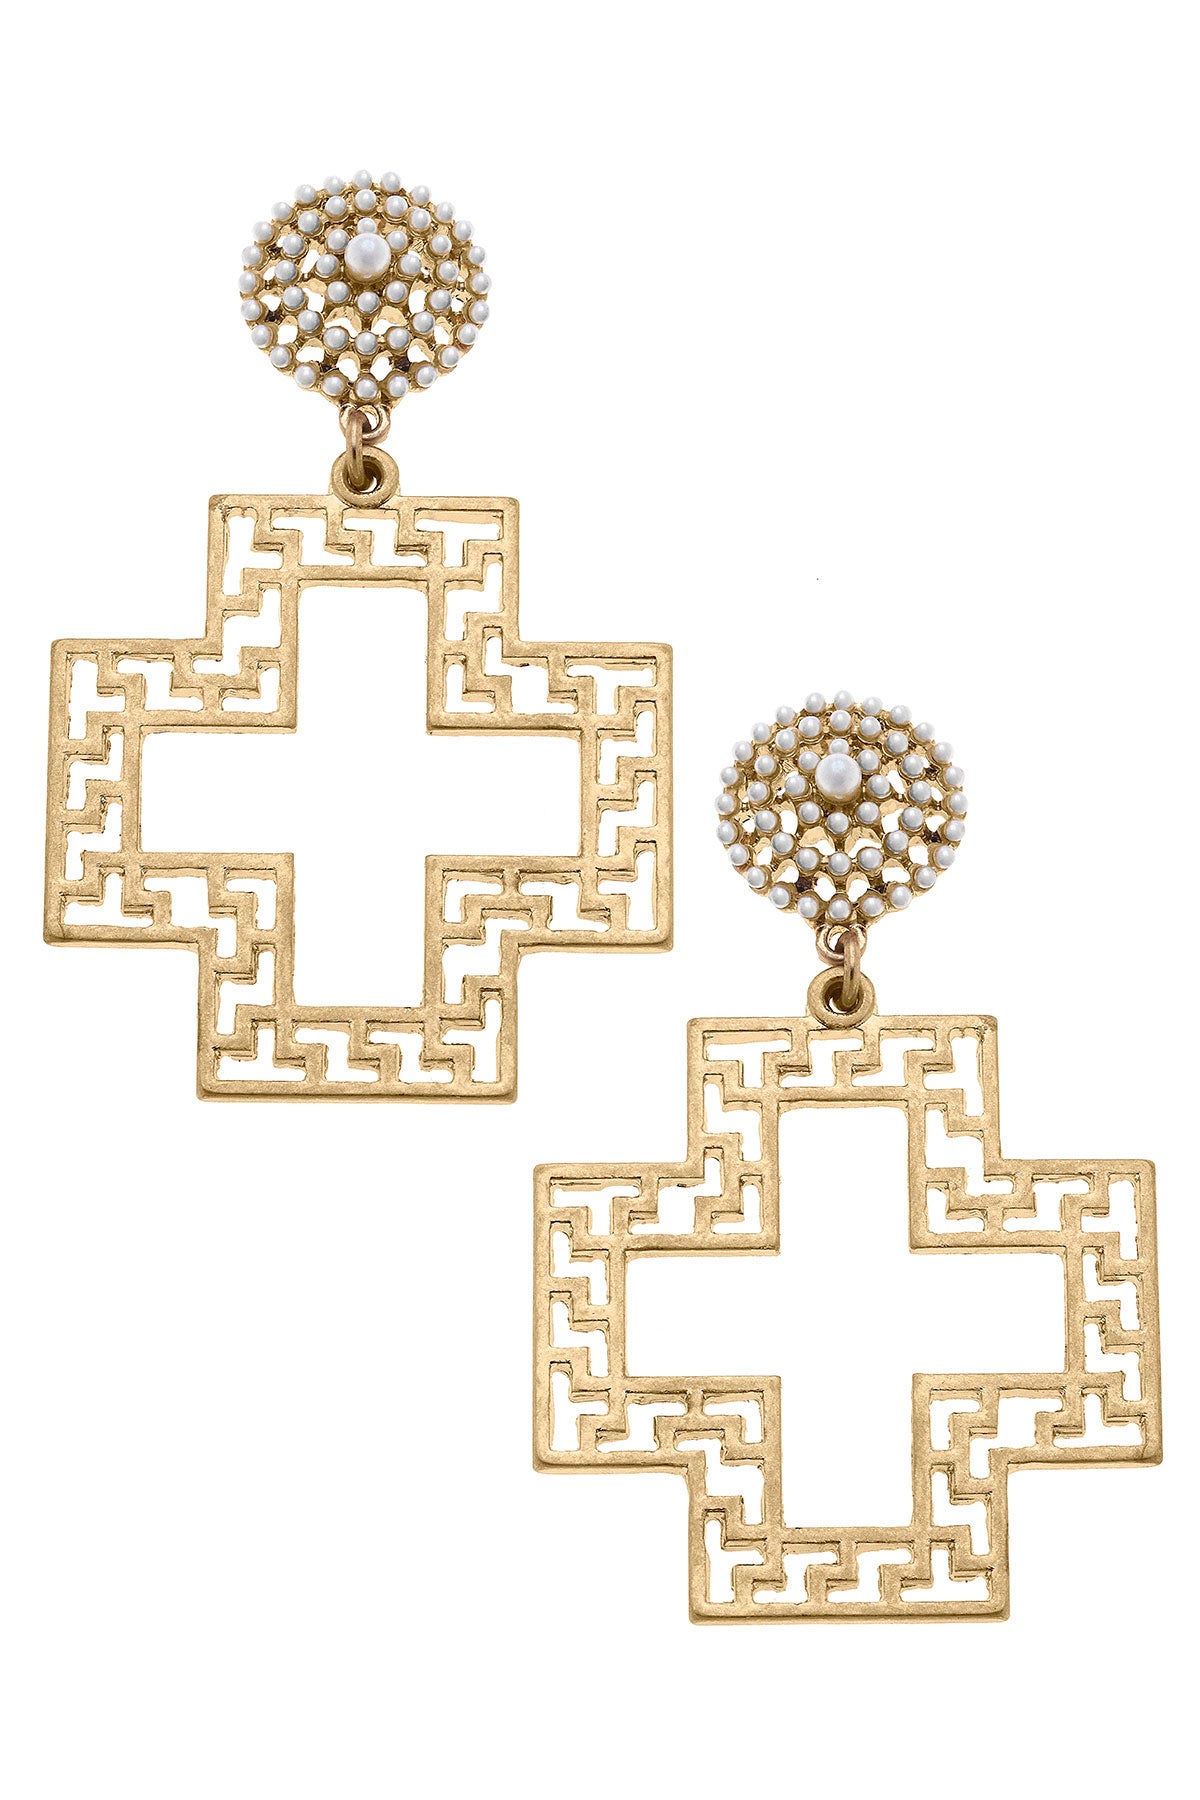 Emilia Greek Keys Cross & Pearl Studded Statement Earrings in Worn Gold